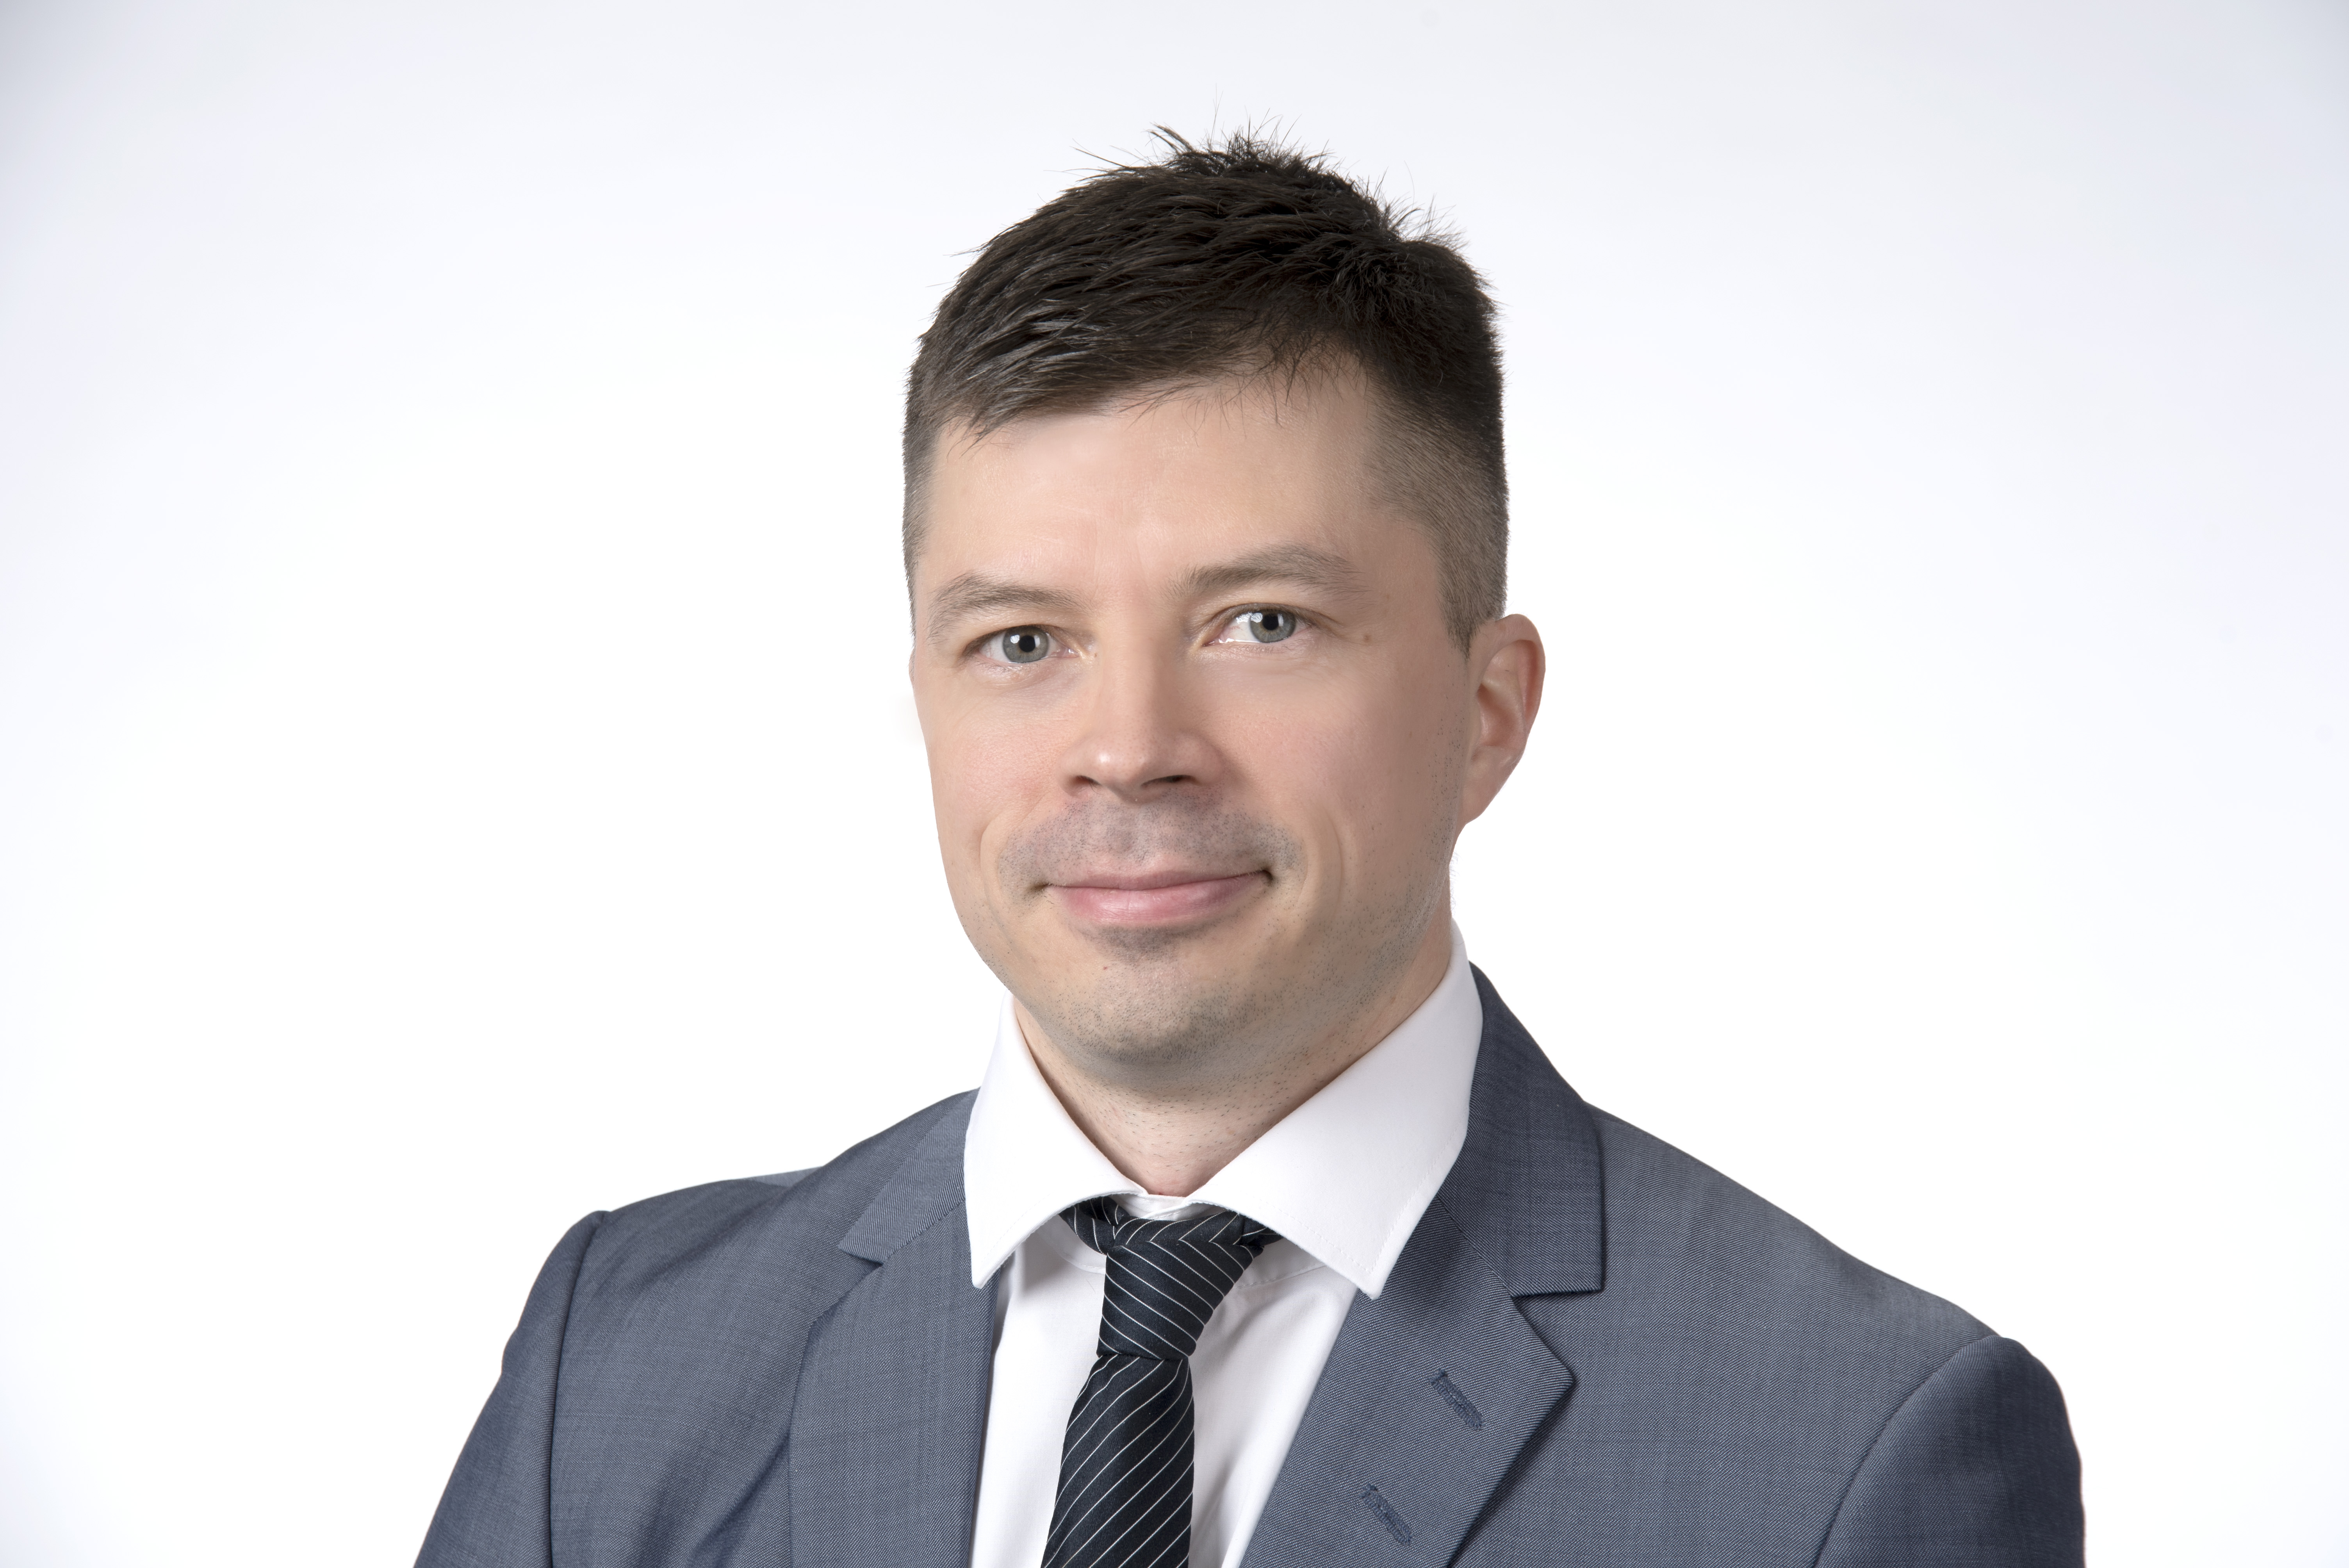 Meet Antti Tolonen - KPMG Finland